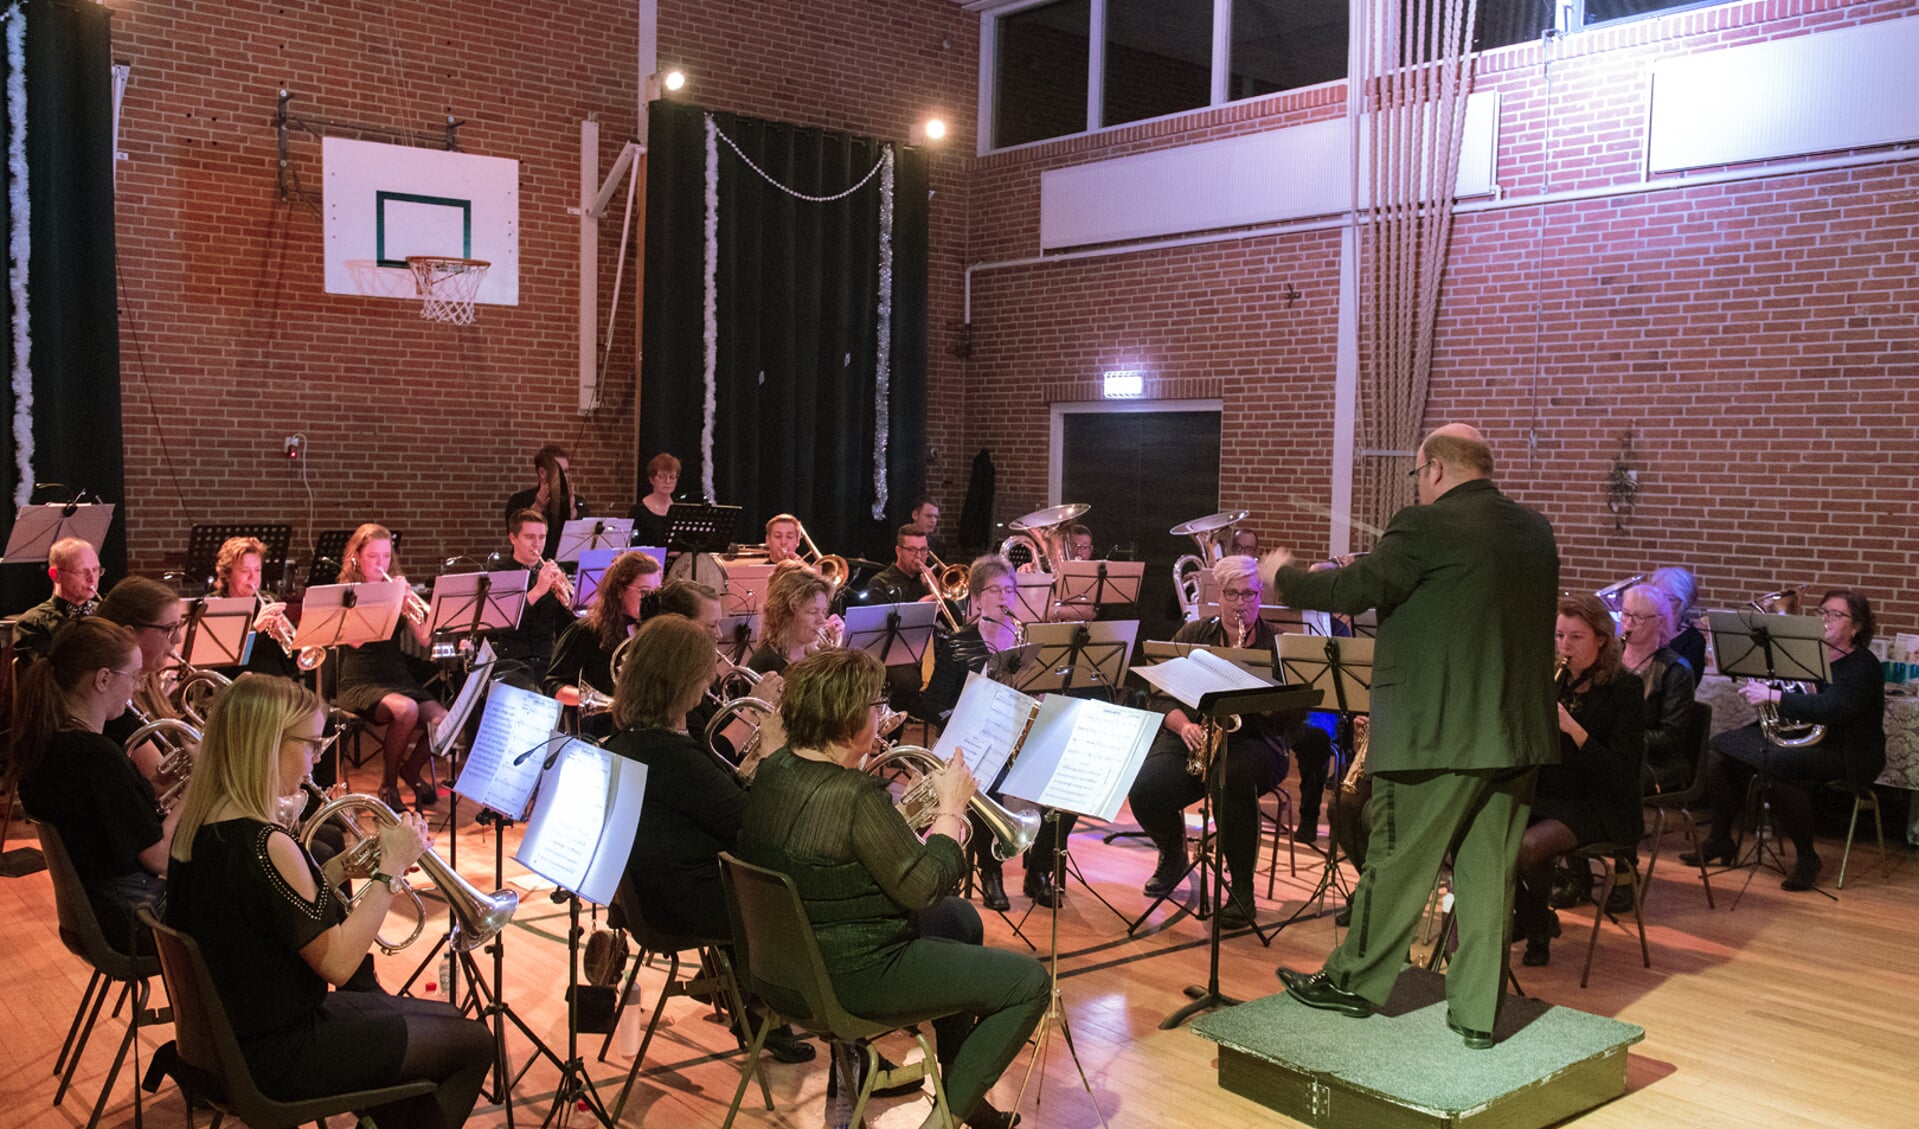 Muziekvereniging T.A.V.E.N.U. heeft harmonieorkest De Herleving uitgenodigd voor een dubbelconcert.